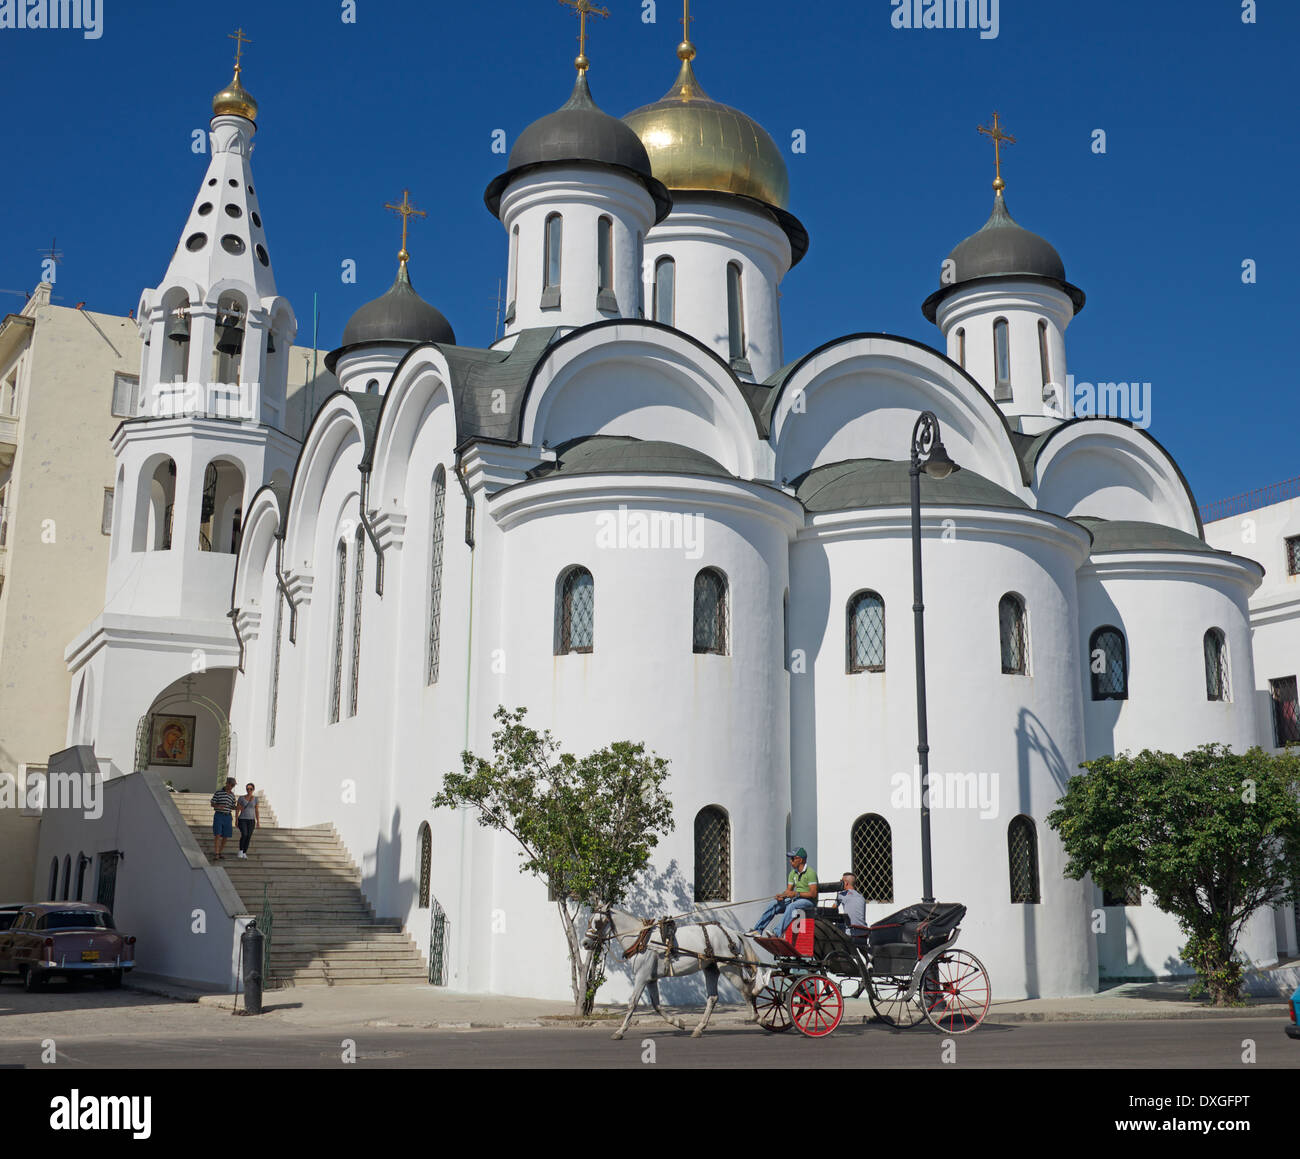 Iglesia Ortodoxa Rusa de La Habana Vieja Cuba Foto de stock